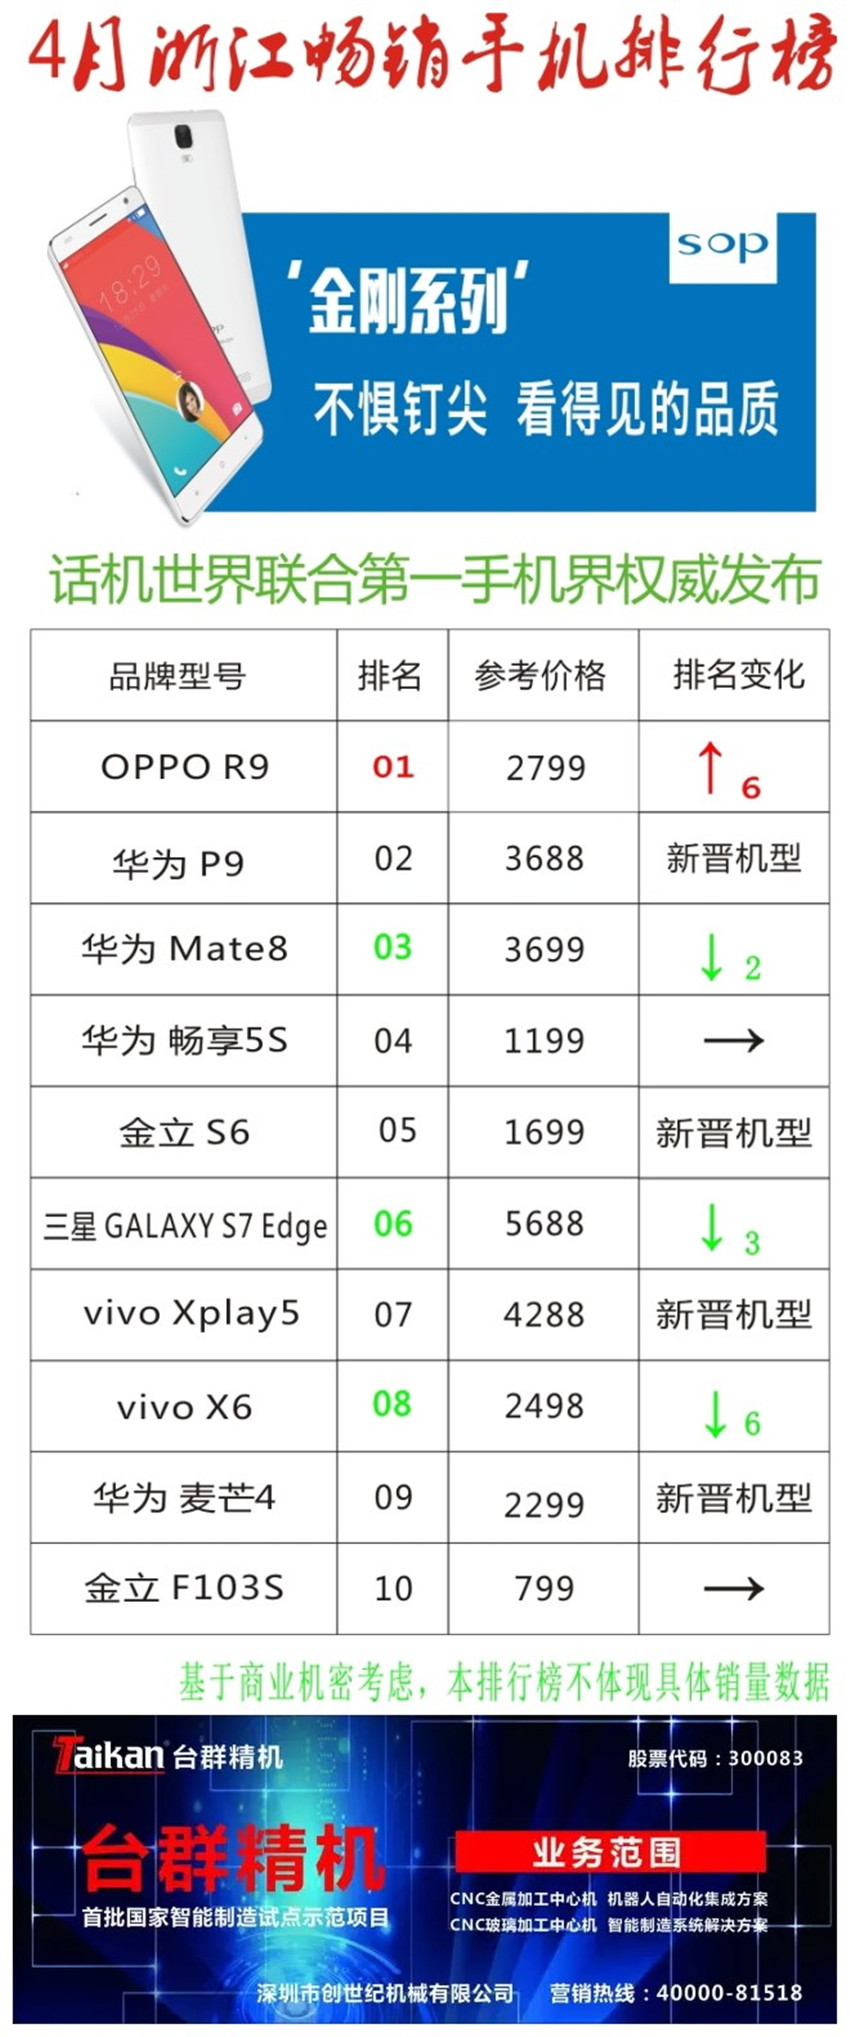 4月浙江畅销手机排行榜:OPPOR9华为P9成新